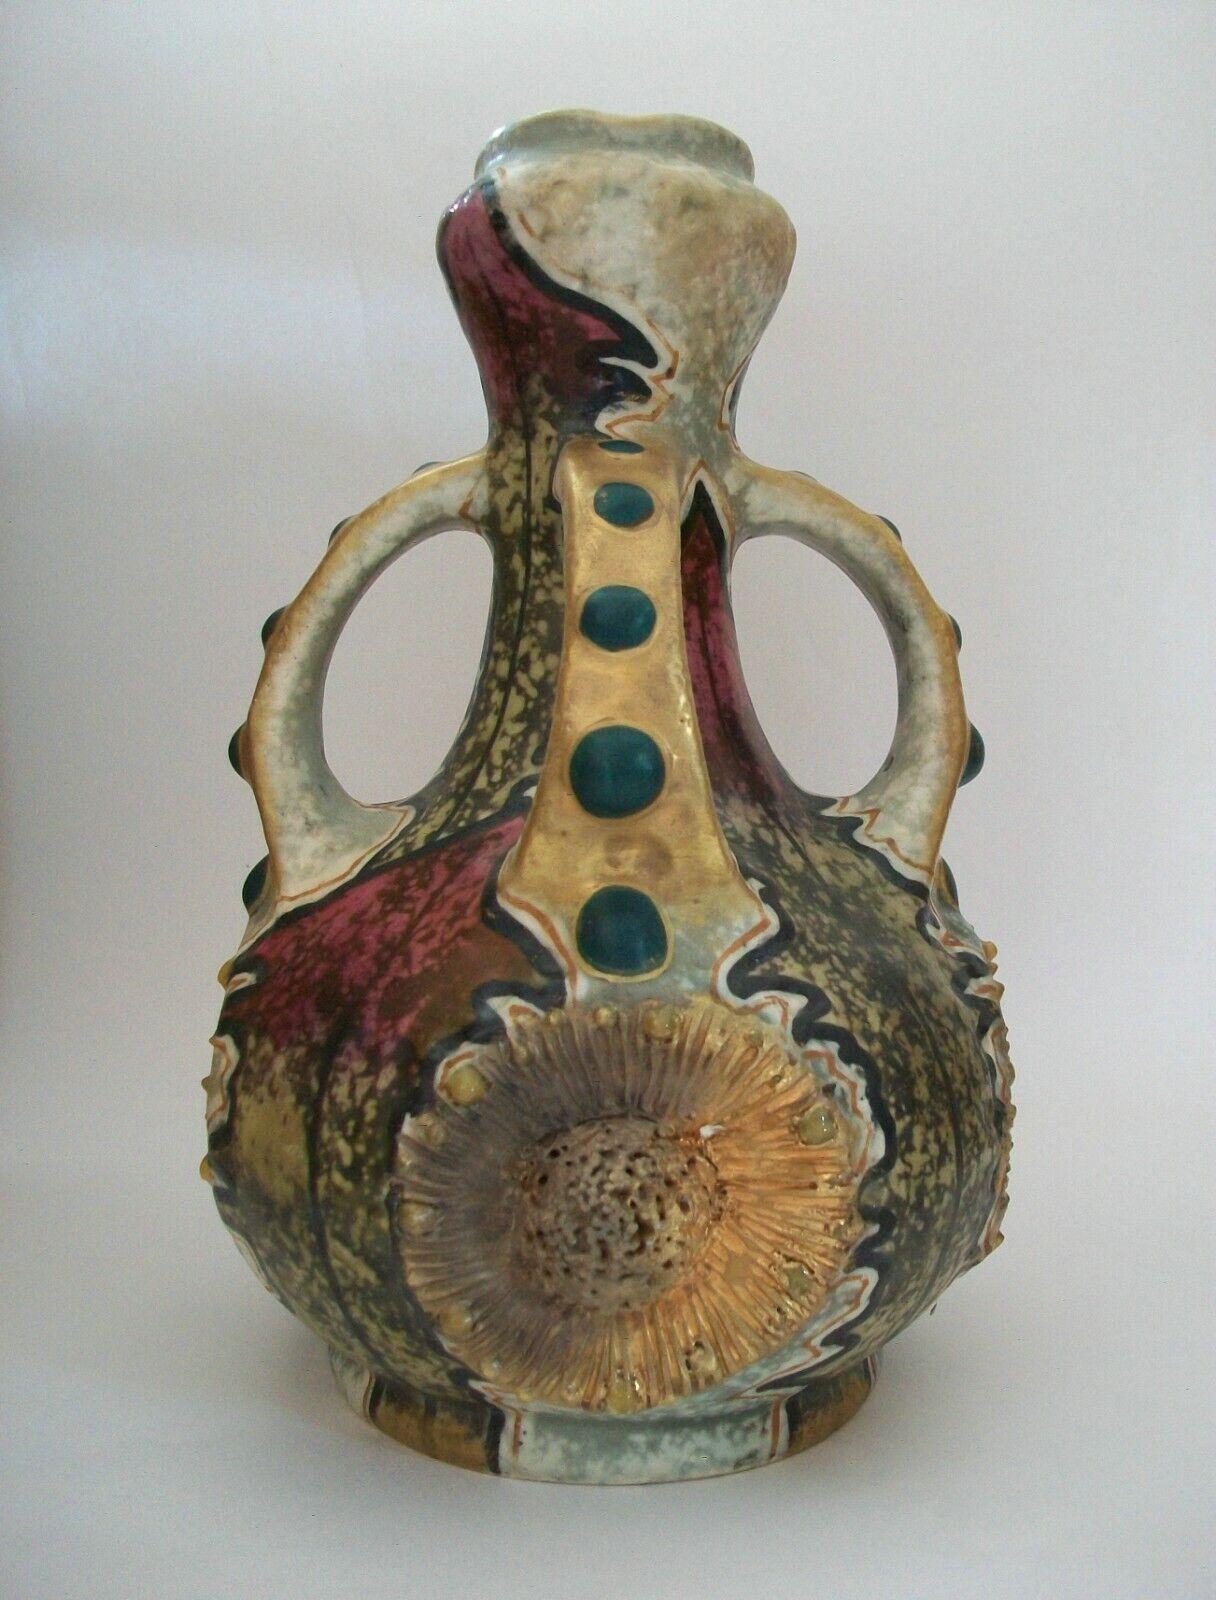 Riessner, Stellmacher & Kessel - Imperial Amphora - Jugendstil-Keramikvase mit geprägten Sonnenblumen, gemalten Blättern und applizierten 'Juwelen' - signiert auf dem Sockel - Österreich - um 1900.

Hervorragender antiker Zustand - kleine